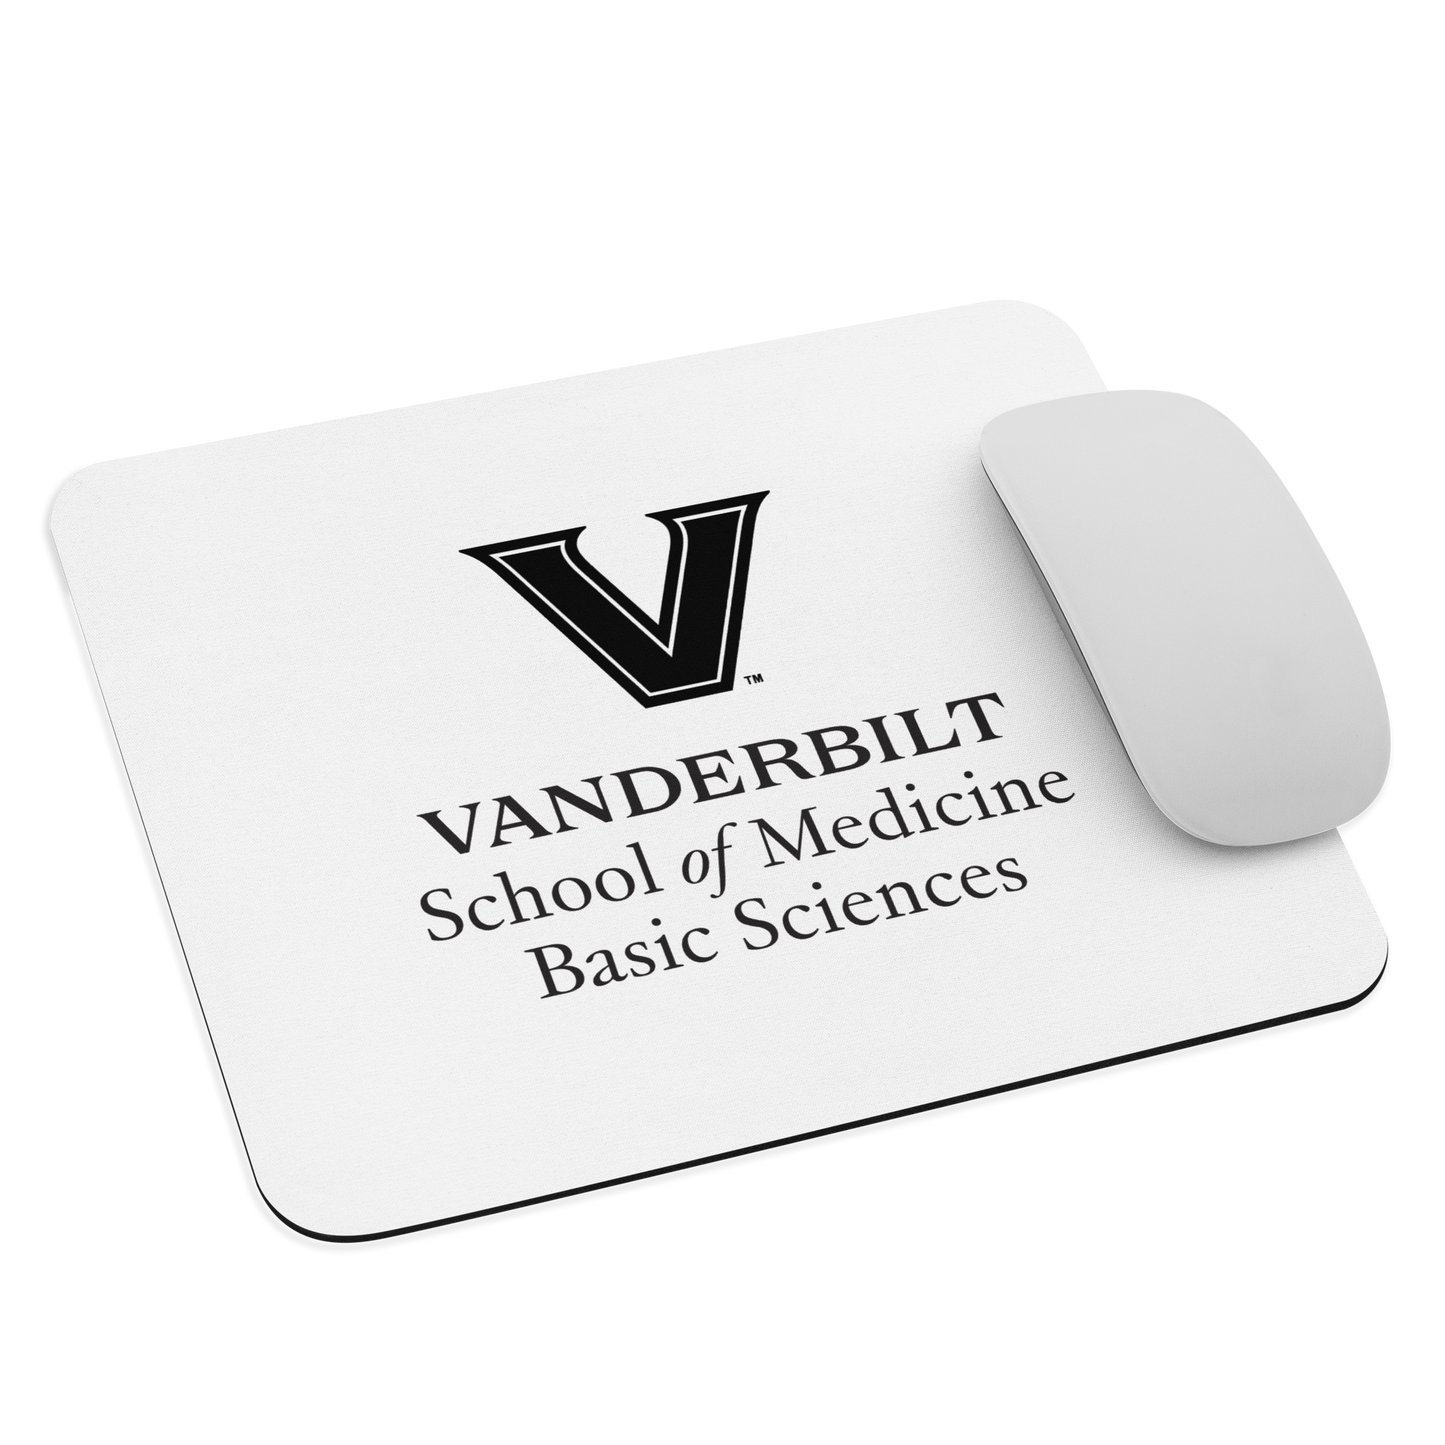 VU Basic Sciences Mouse pad